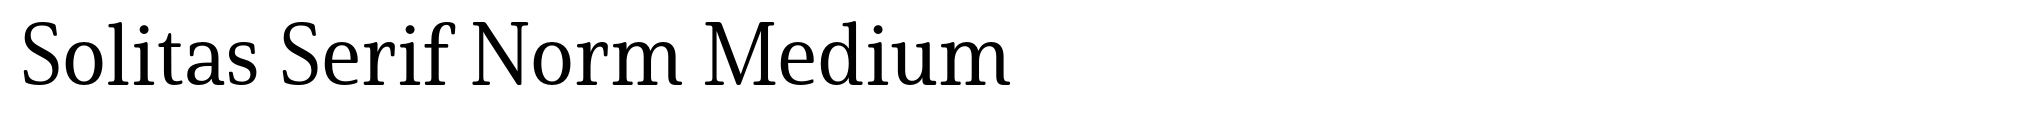 Solitas Serif Norm Medium image